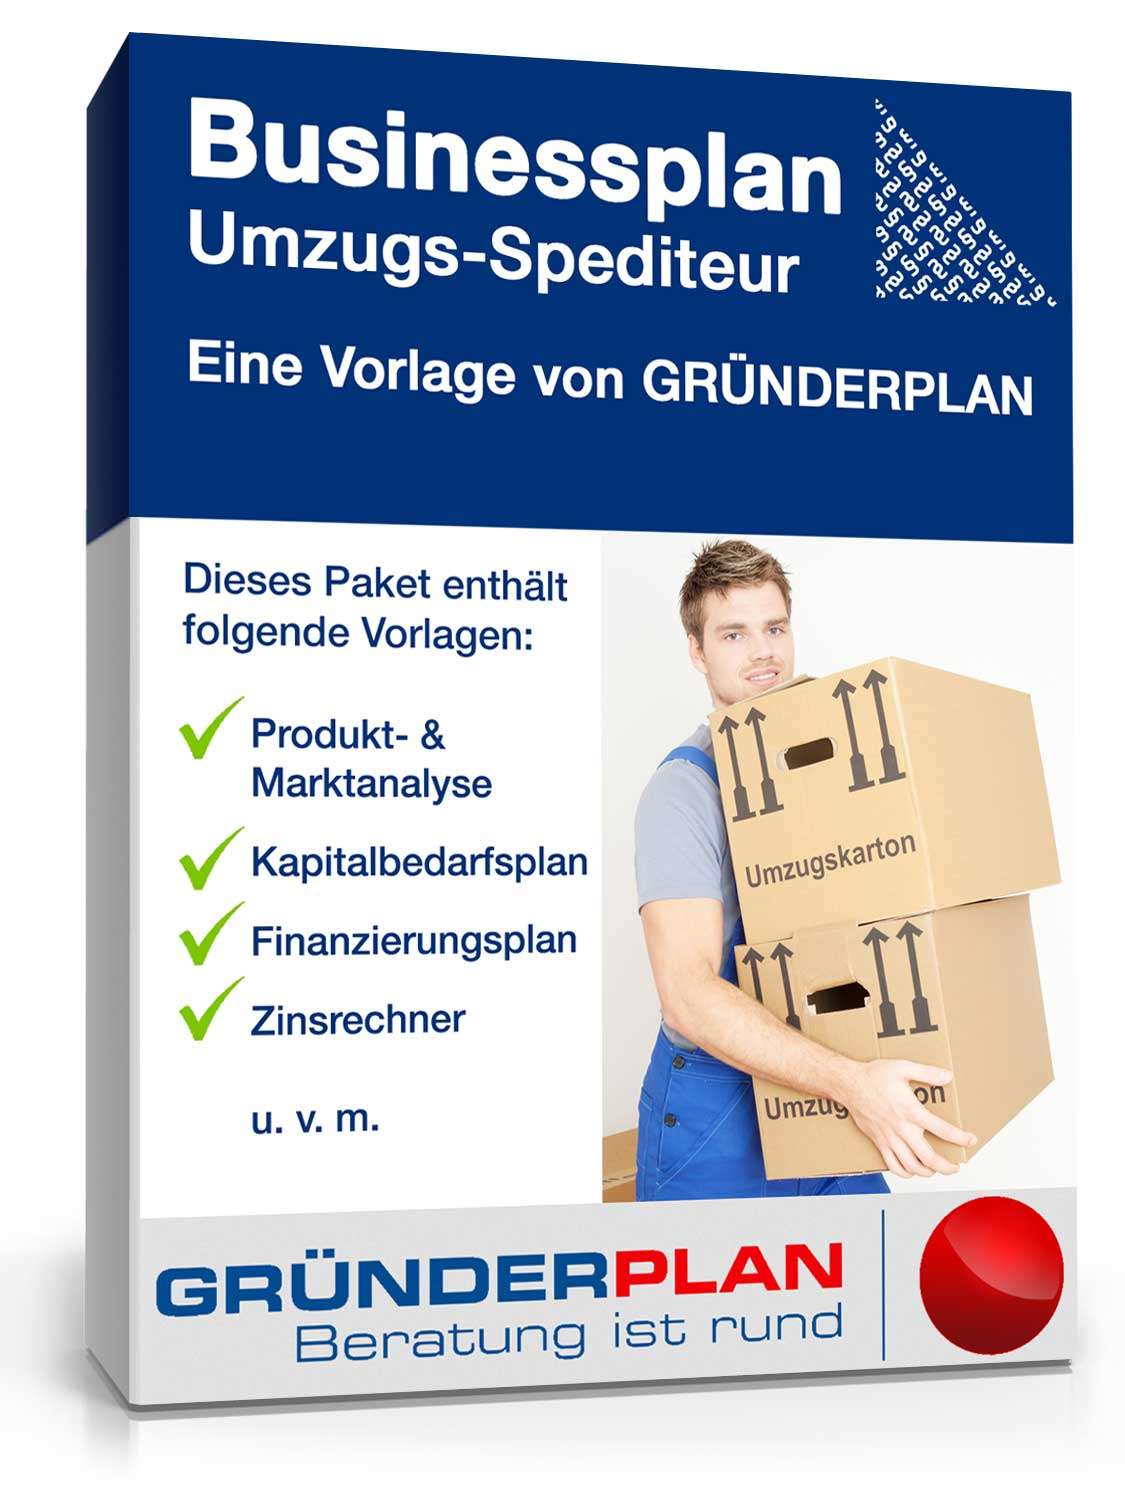 Hauptbild des Produkts: Businessplan Umzugs-Spediteur von Gründerplan